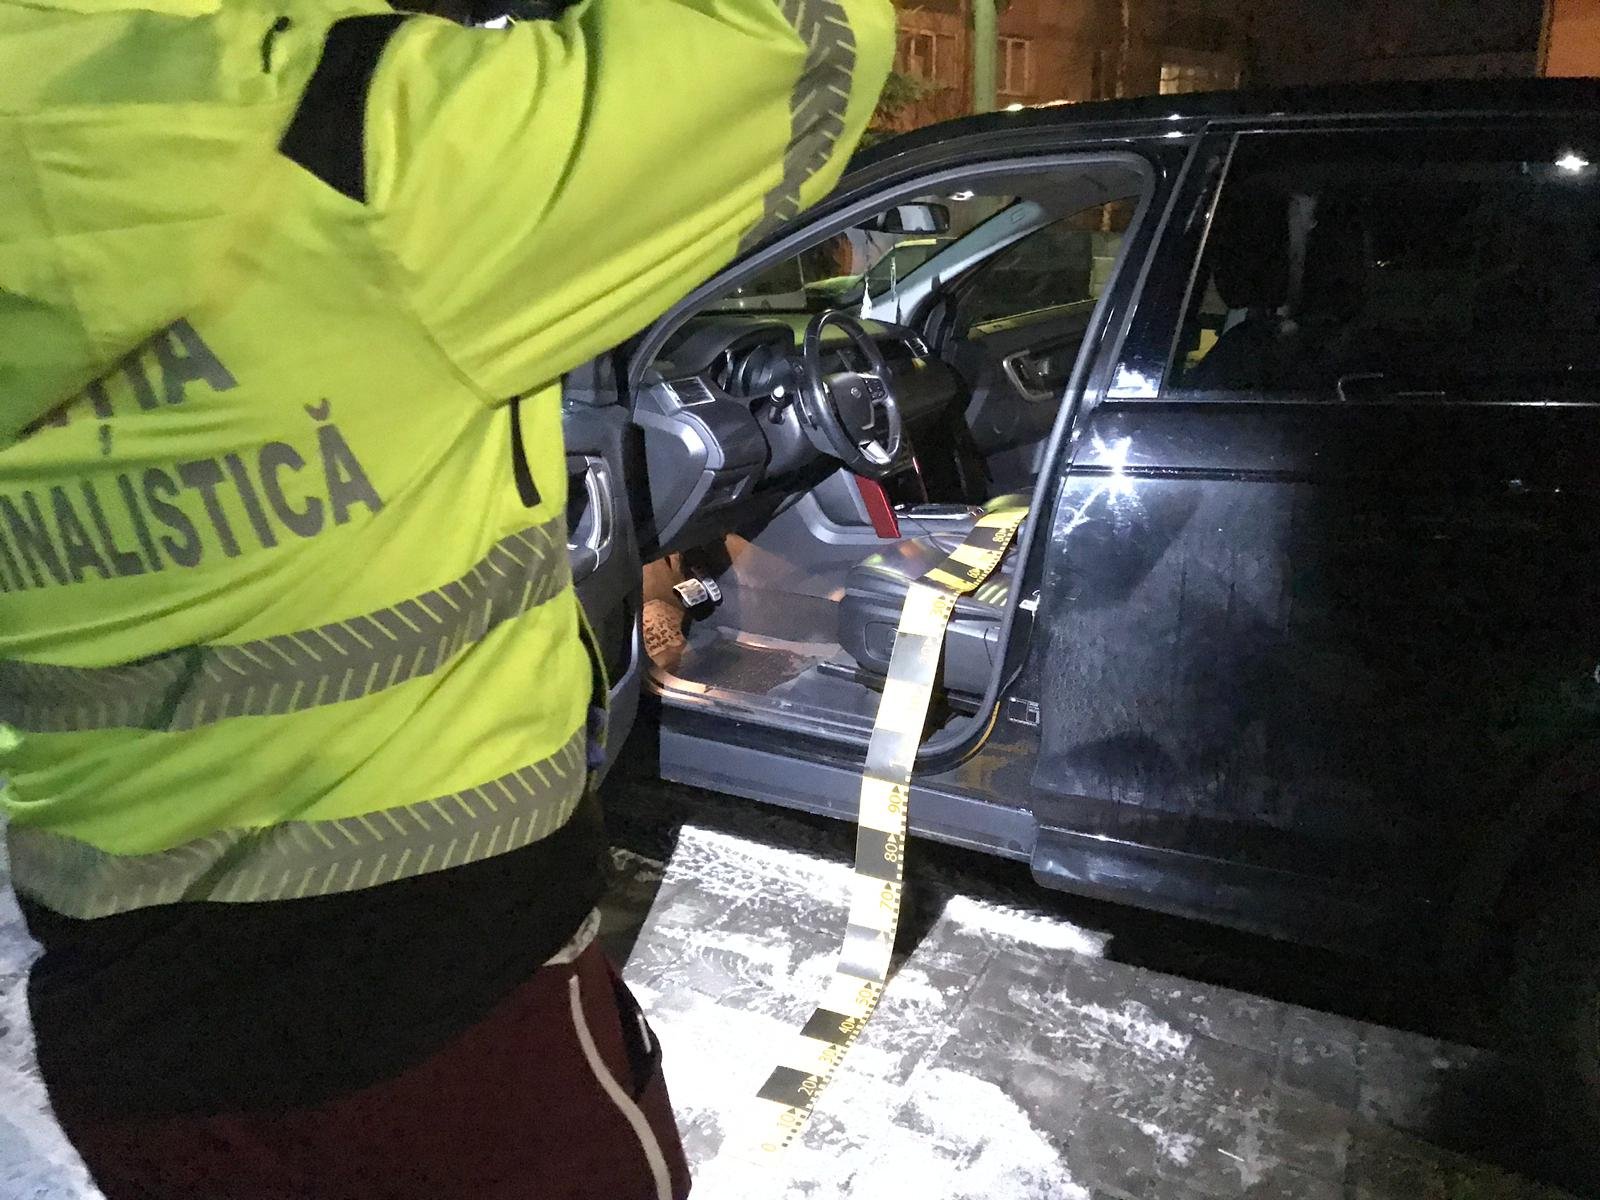  Puștan din Iași, fugit la schi din arestul la domiciliu cu un Range Rover furat